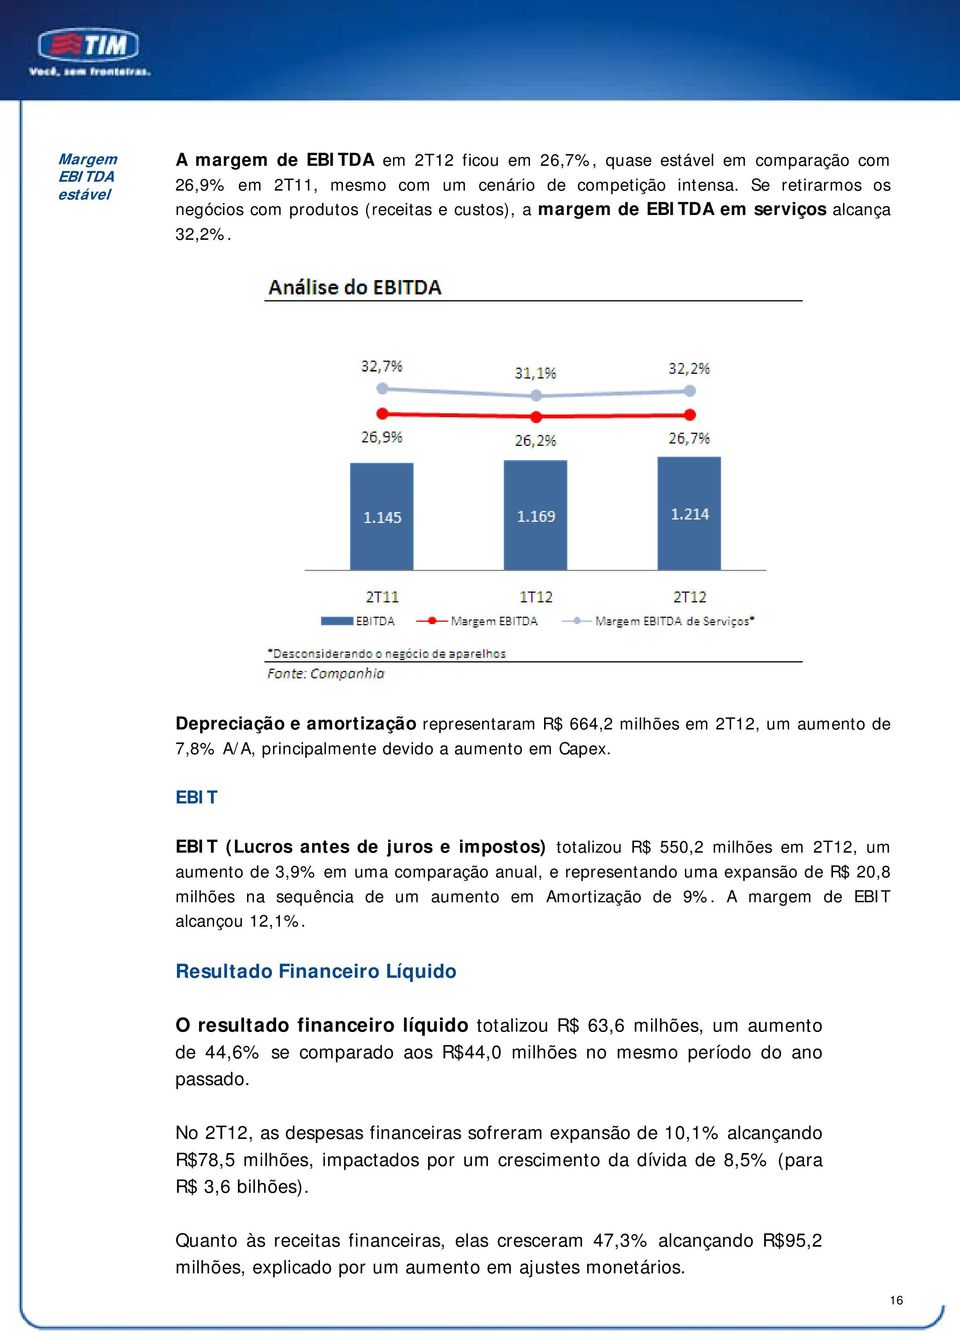 Depreciação e amortização representaram R$ 664,2 milhões em 2T12, um aumento de 7,8% A/A, principalmente devido a aumento em Capex.